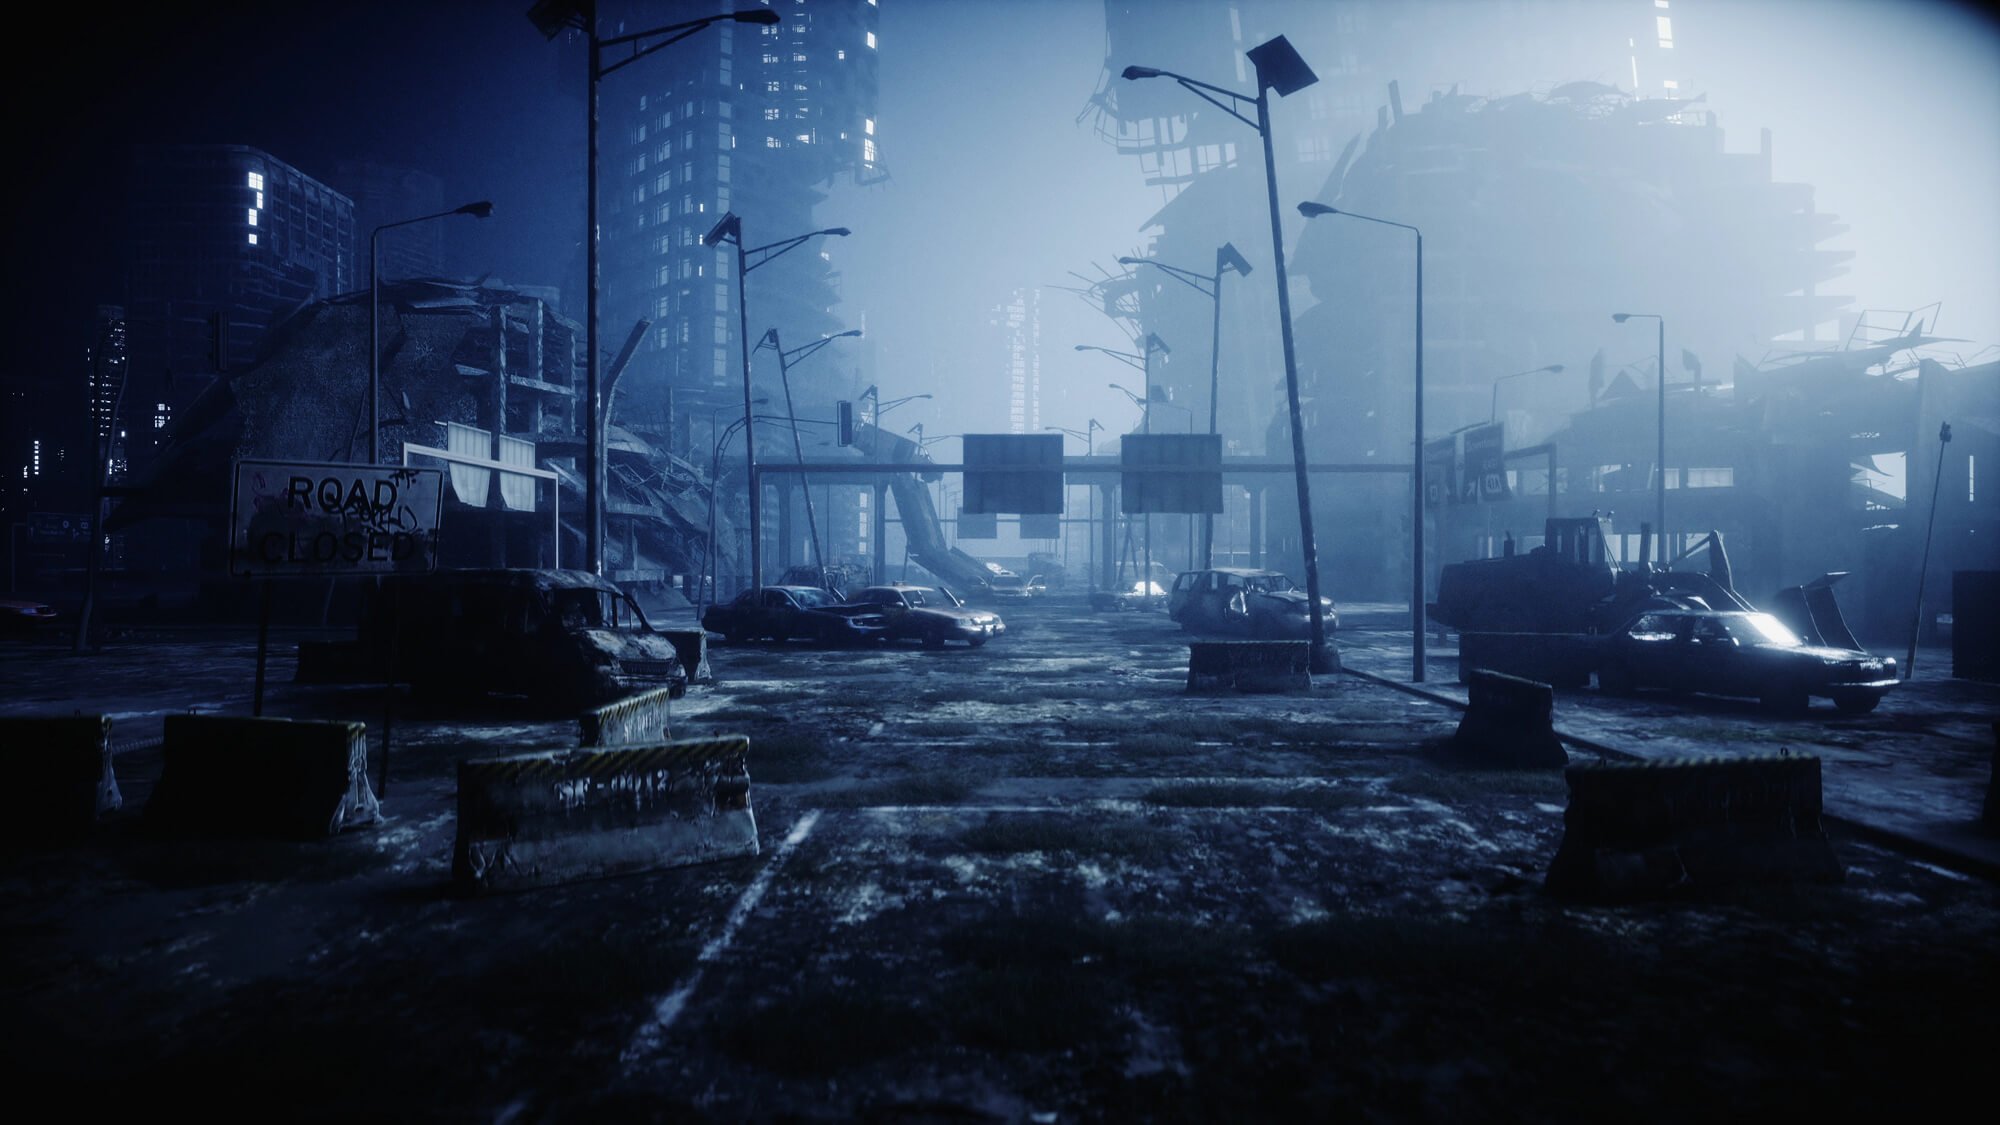 Apocalyptic city scene